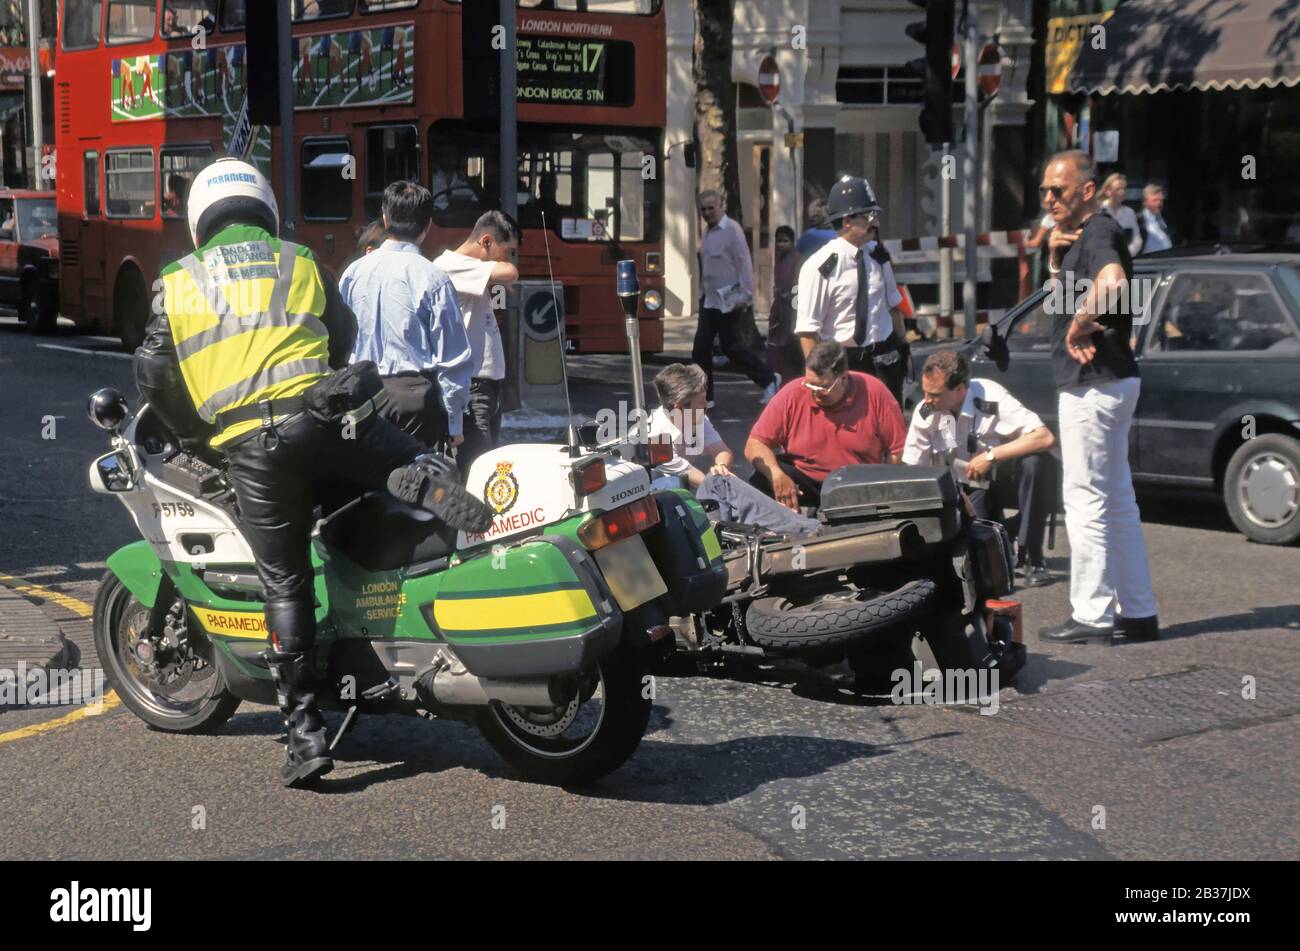 Le service ambulancier de Londres arrive en moto paramédical pour aider le  coursier de moto couché dans la route accident de la route scène de rue  Londres Angleterre Royaume-Uni Photo Stock -